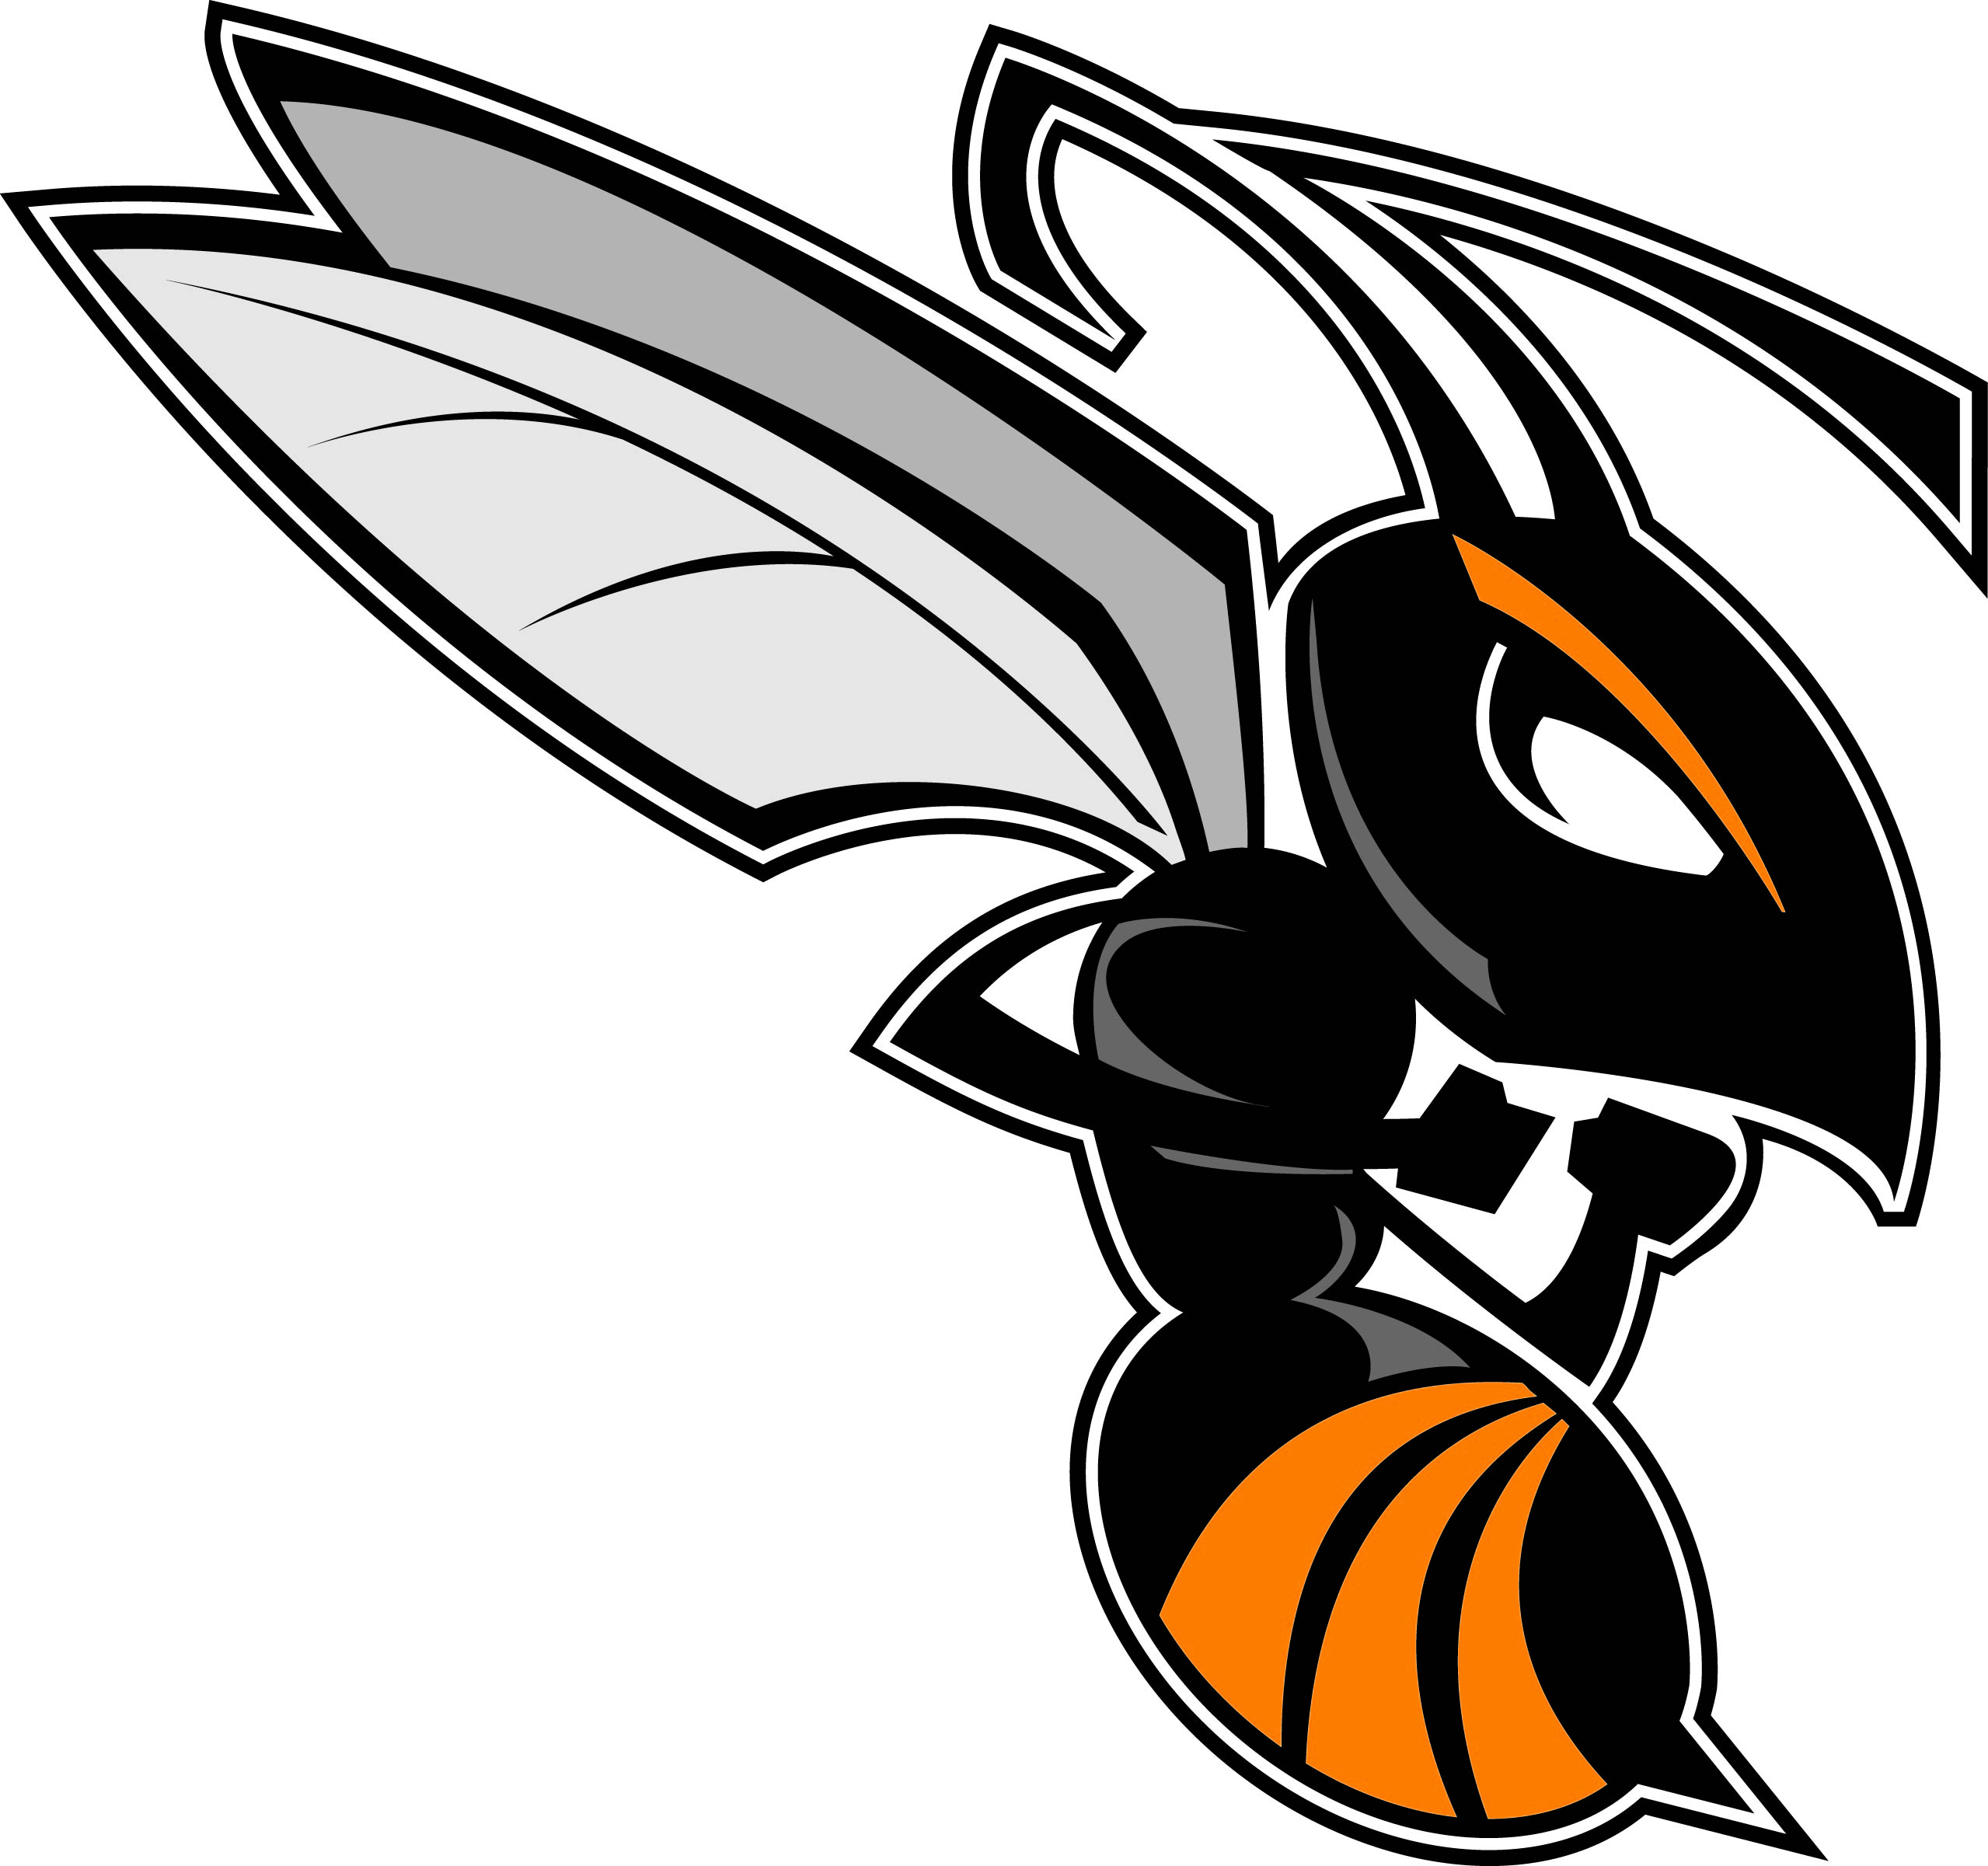 Hornet logo clipart